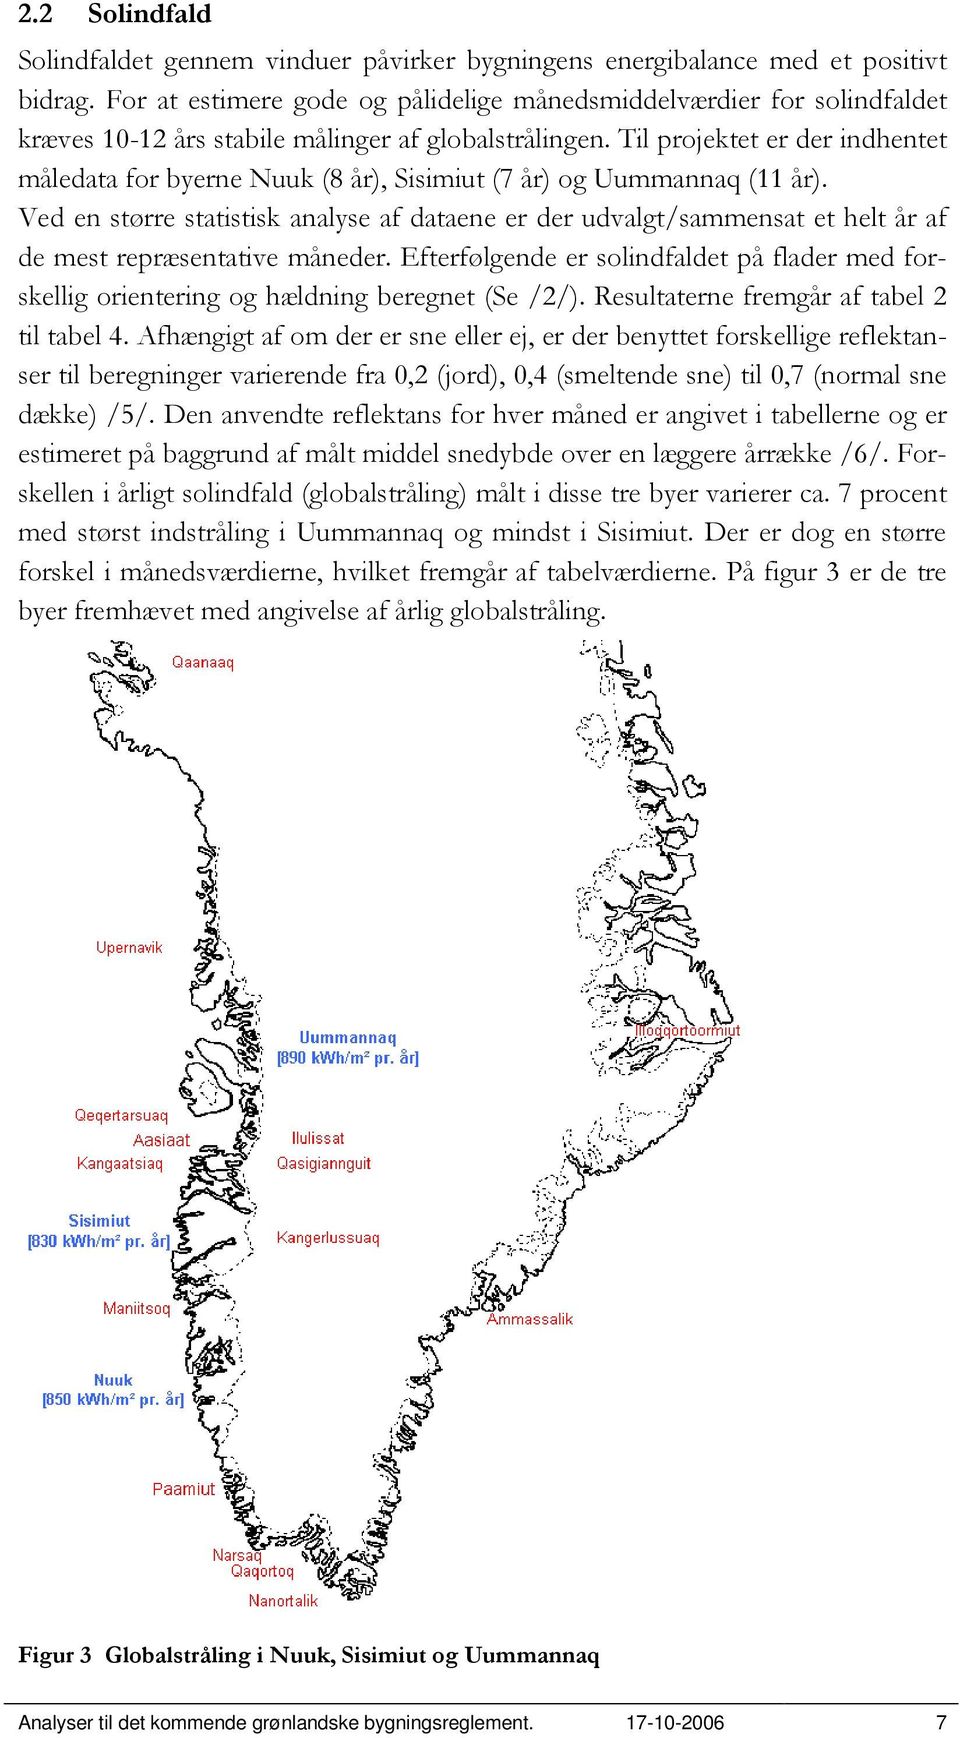 Til projektet er der indhentet måledata for byerne Nuuk (8 år), Sisimiut (7 år) og Uummannaq (11 år).